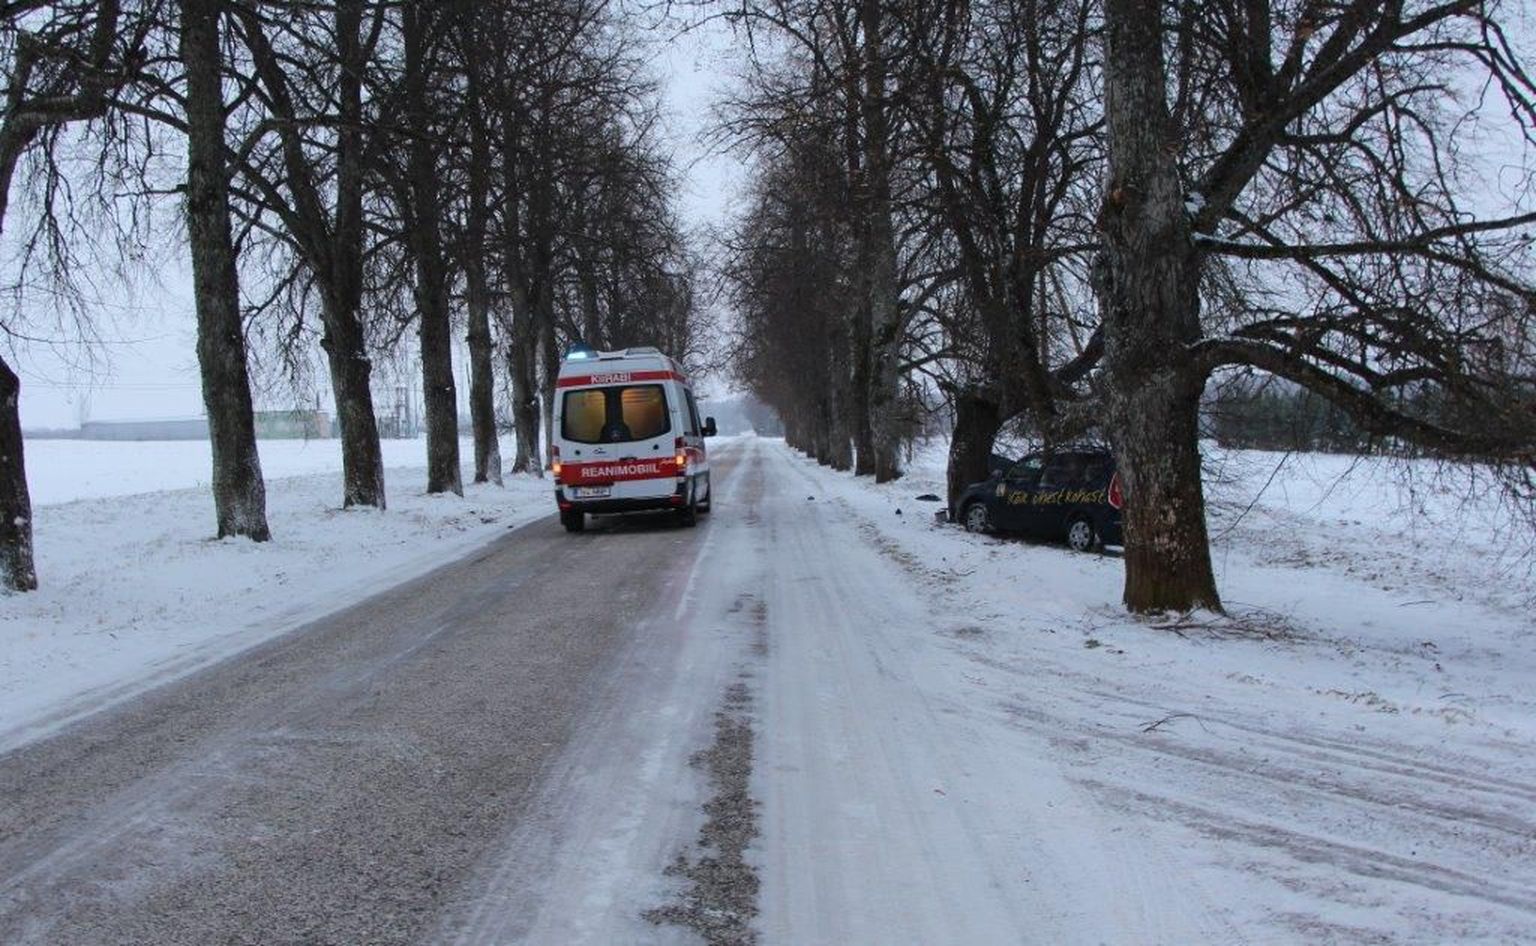 Liiklusõnnetus Tartu vallas Lähte-Kõrveküla teel. Teelt välja vastu puud sõitnud autos sai vigastada laps.